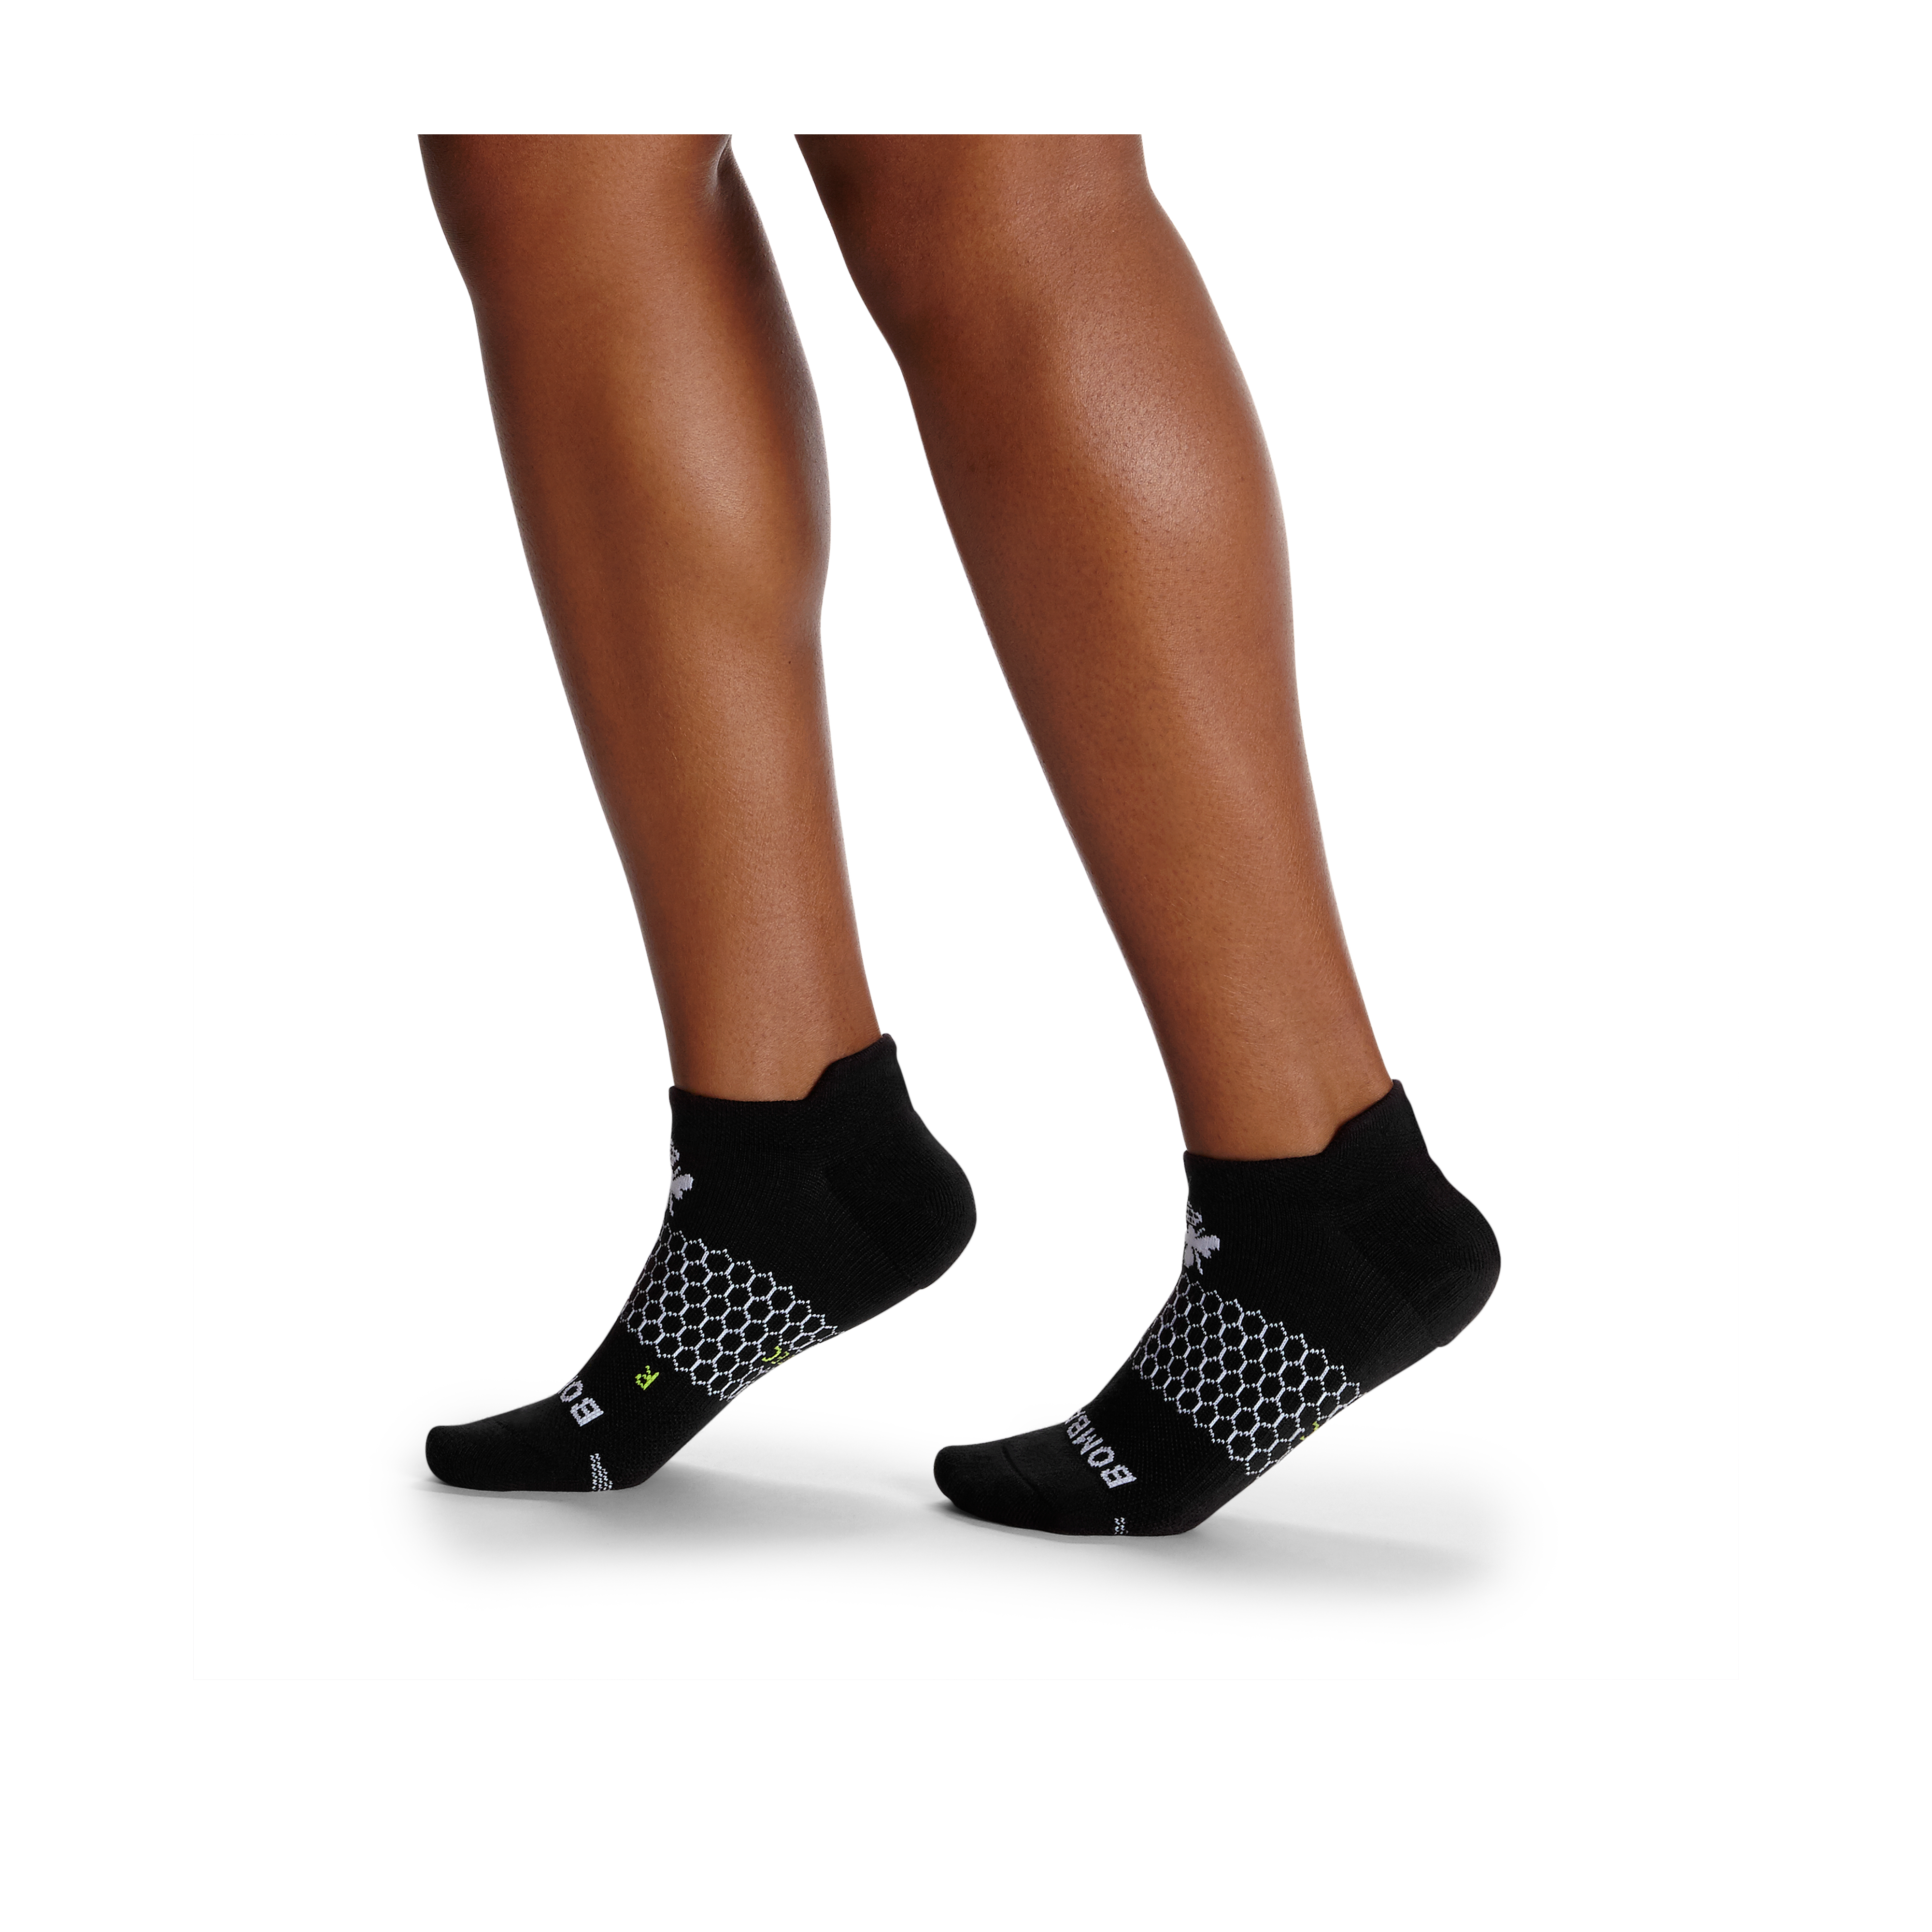 Bombas Women's Ankle Socks